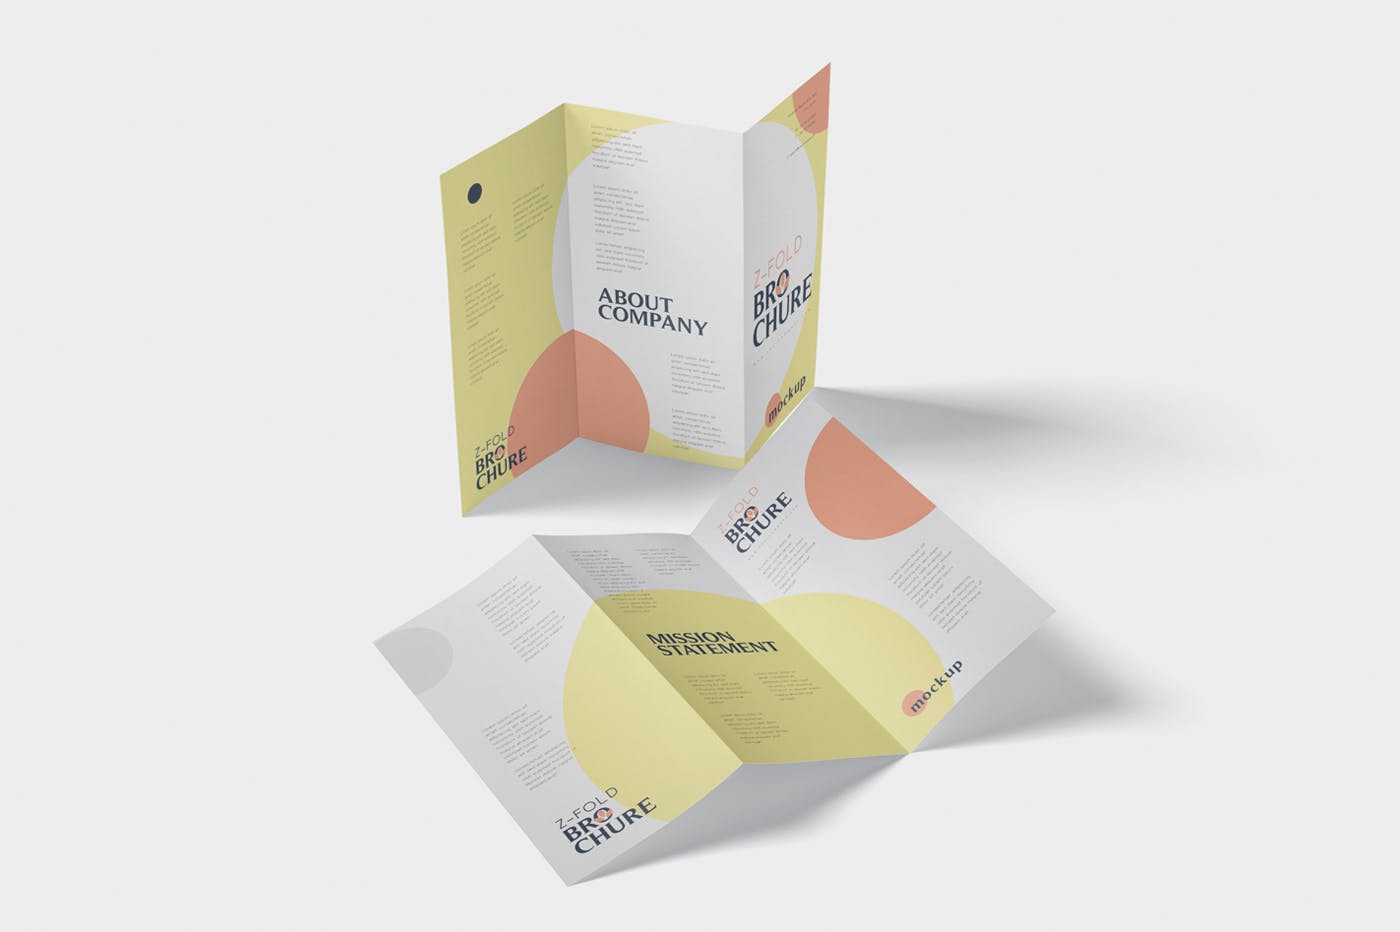 三折页设计风格企业传单/宣传单设计图样机第一素材精选 DL Z-Fold Brochure Mockup – 99 x 210 mm Size插图(2)